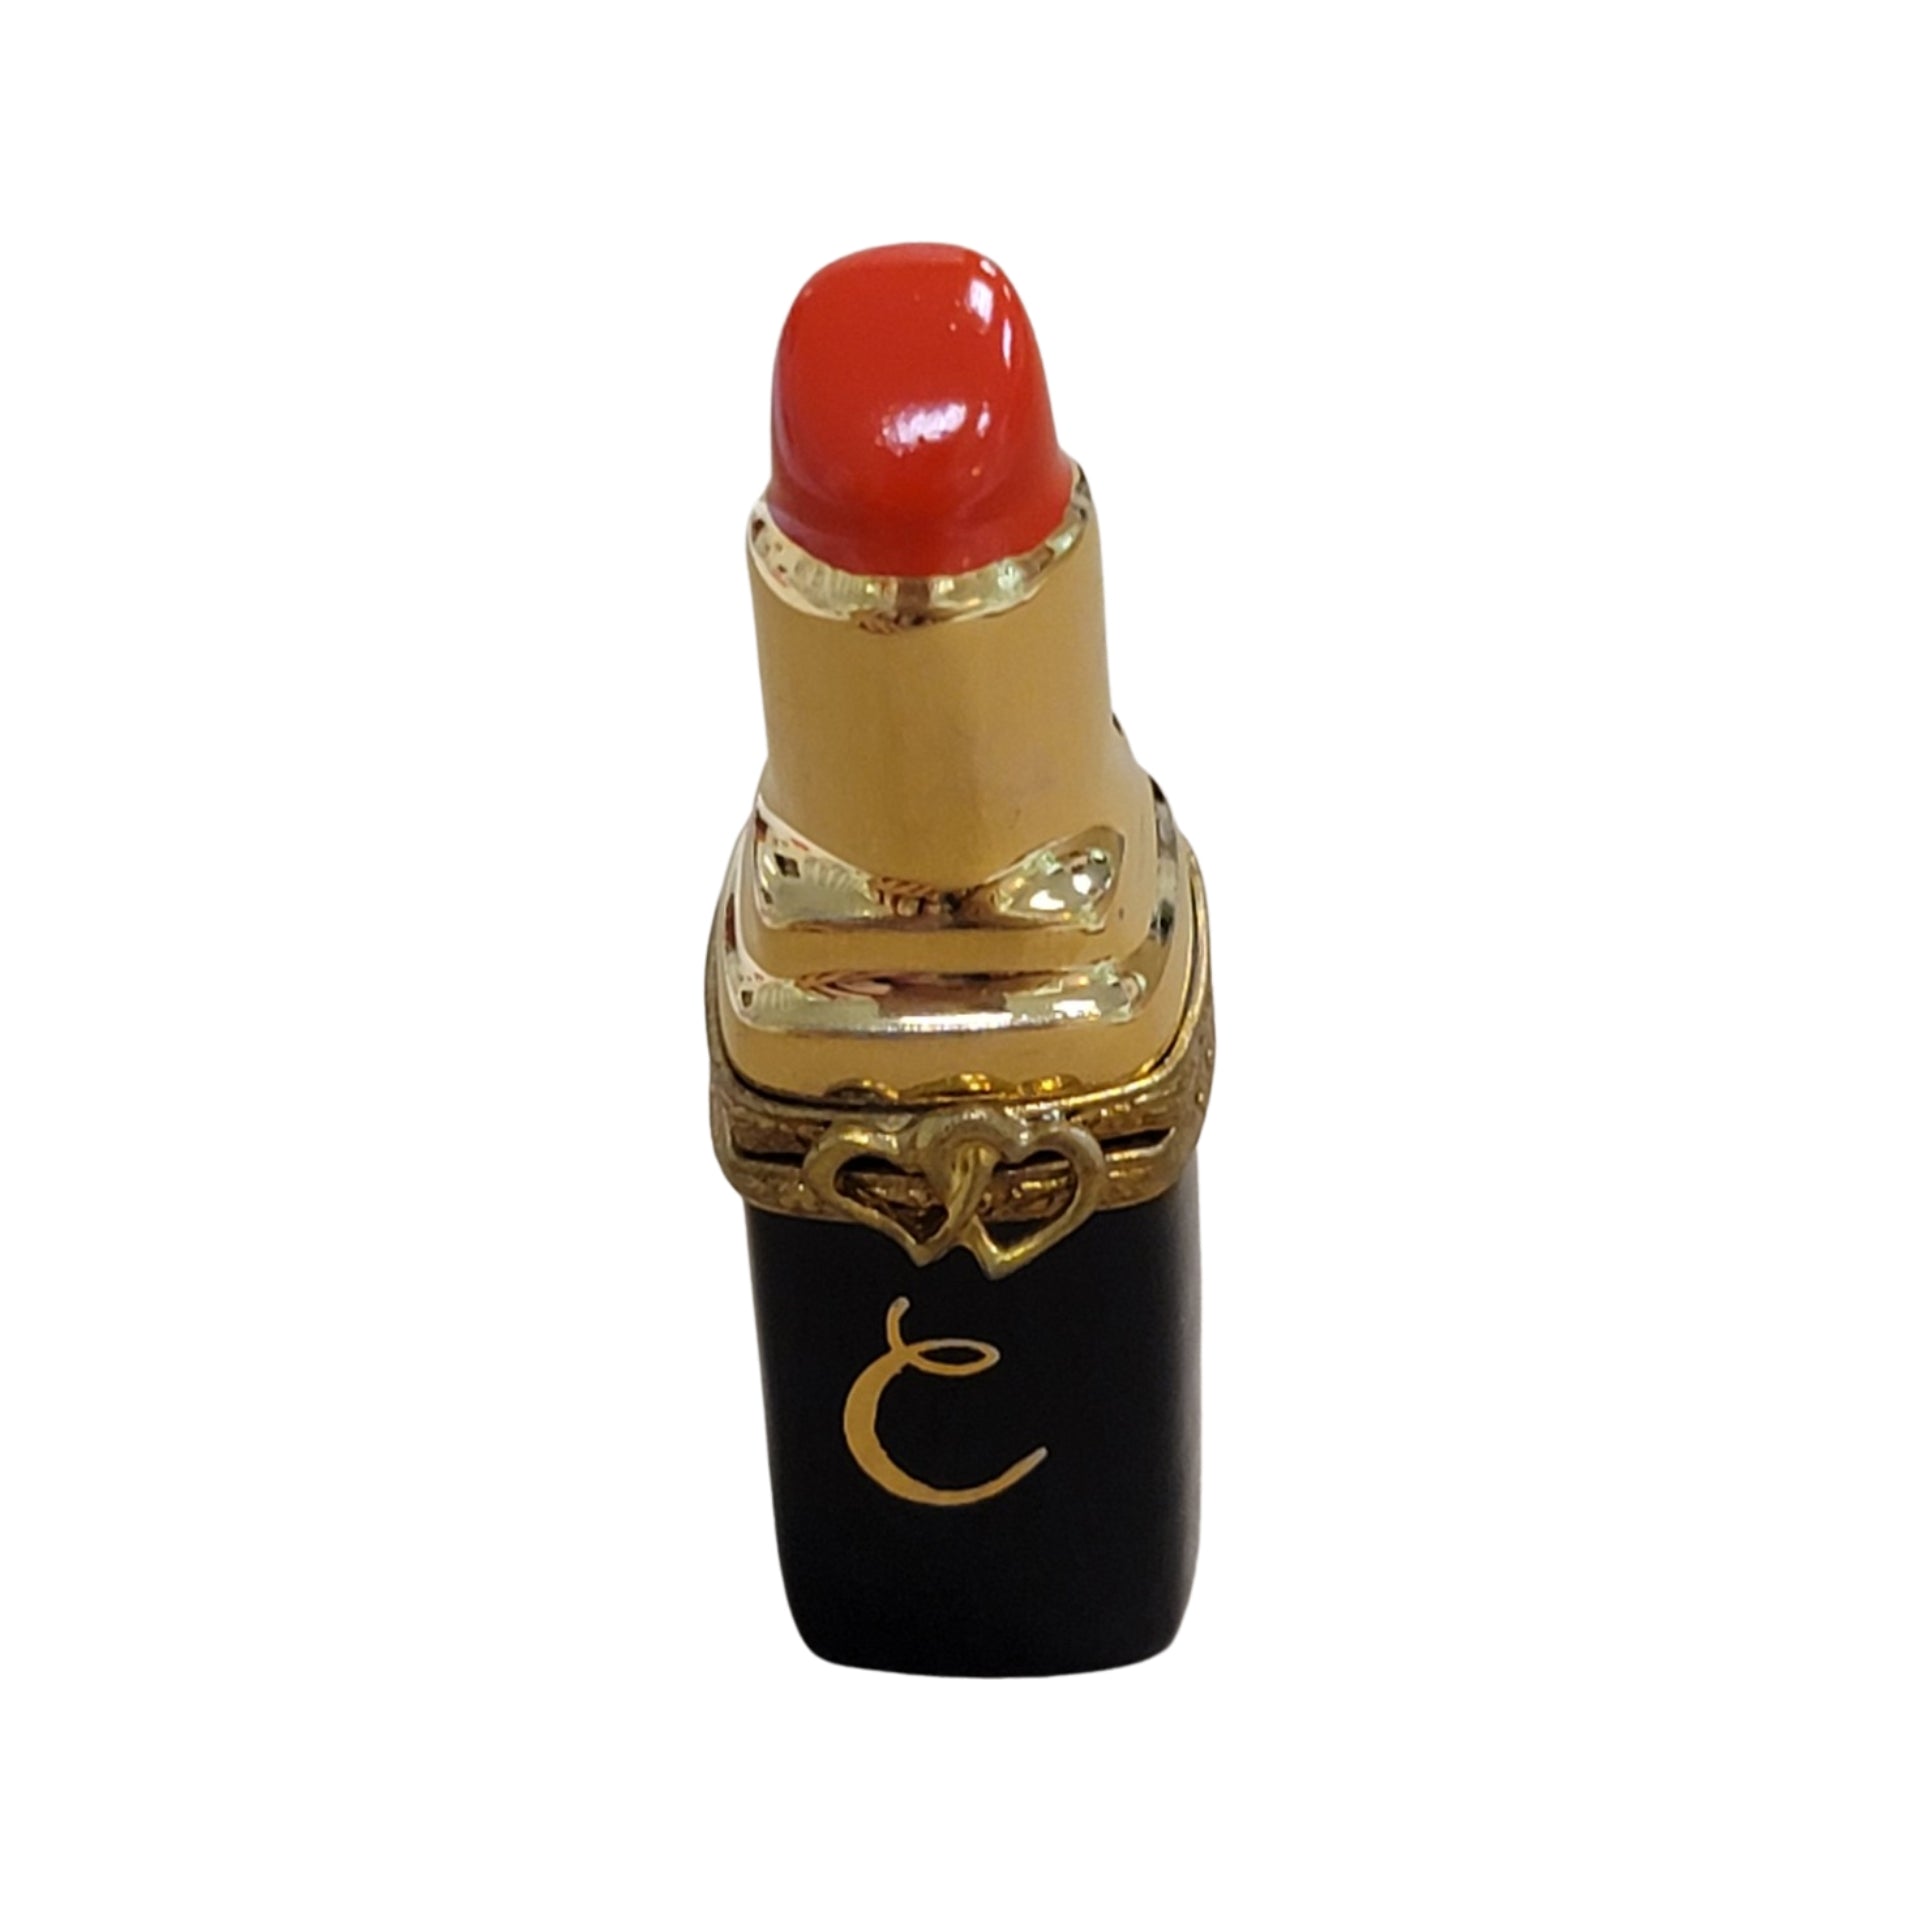 Buy L'Oréal Paris Infallible Matte Resistance Liquid Lipstick 245